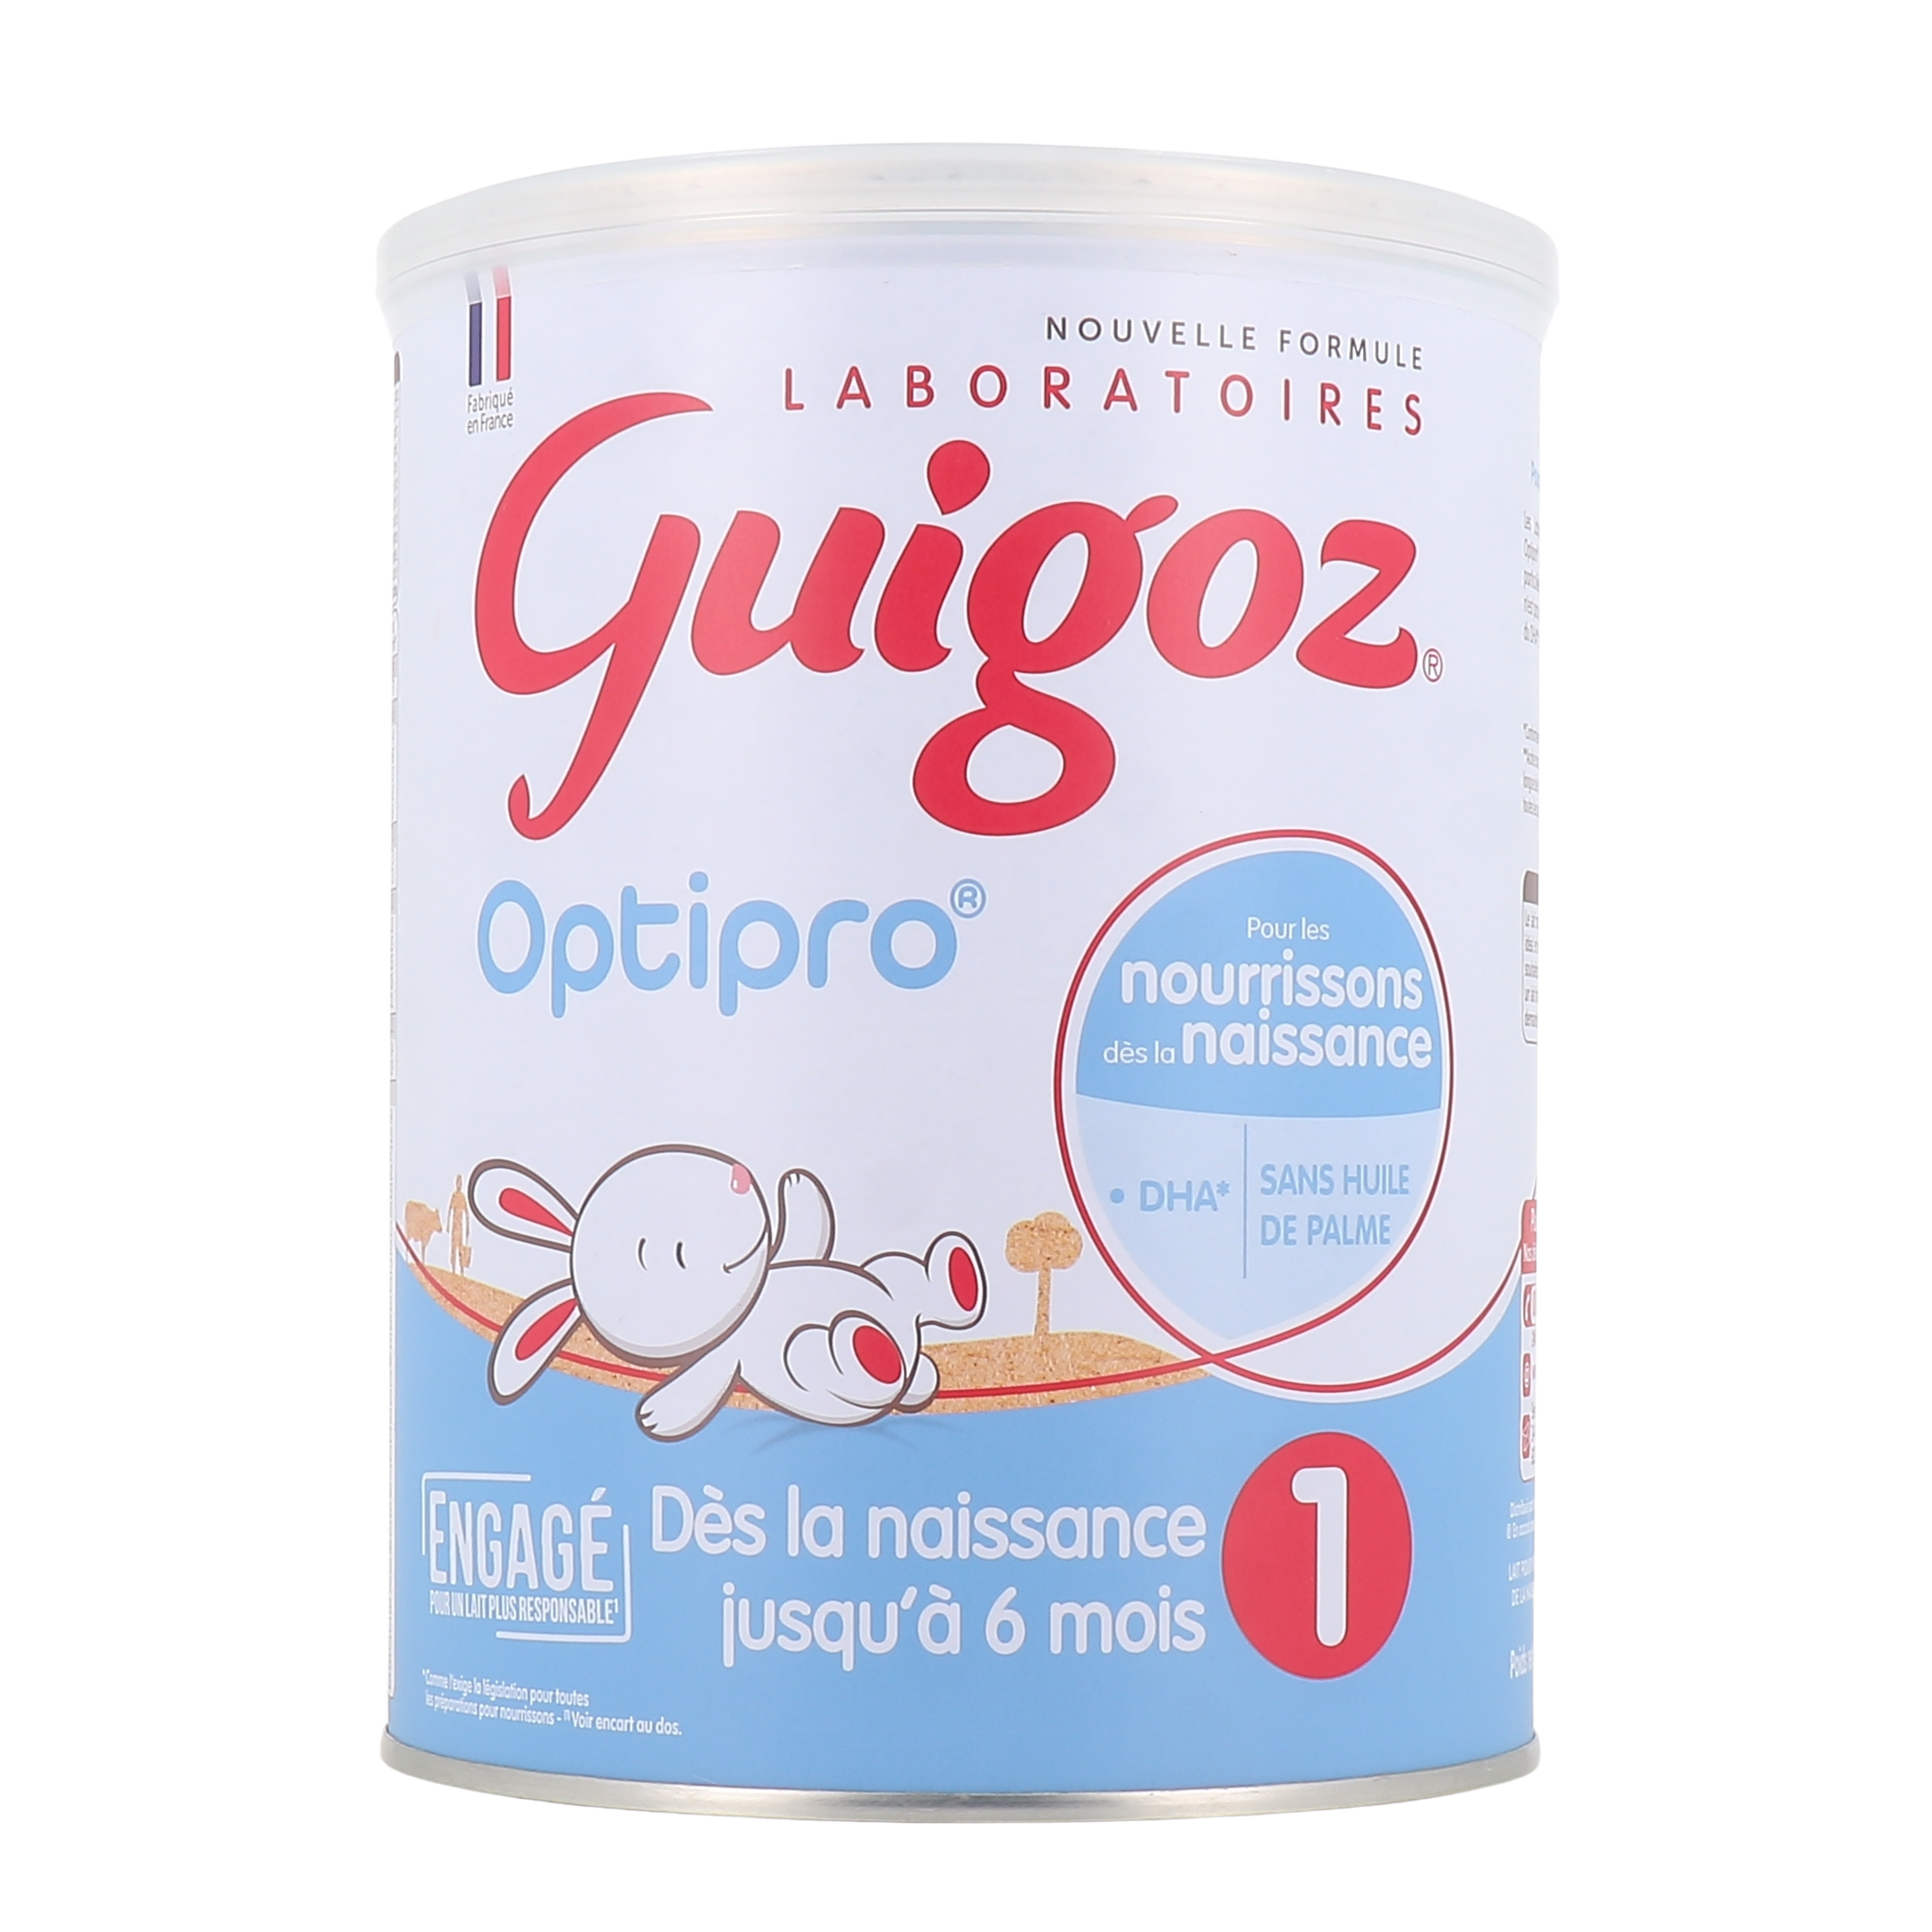 GUIGOZ Optipro Bio Lait en poudre 1er age - 800 g - De 0 a 6 mois